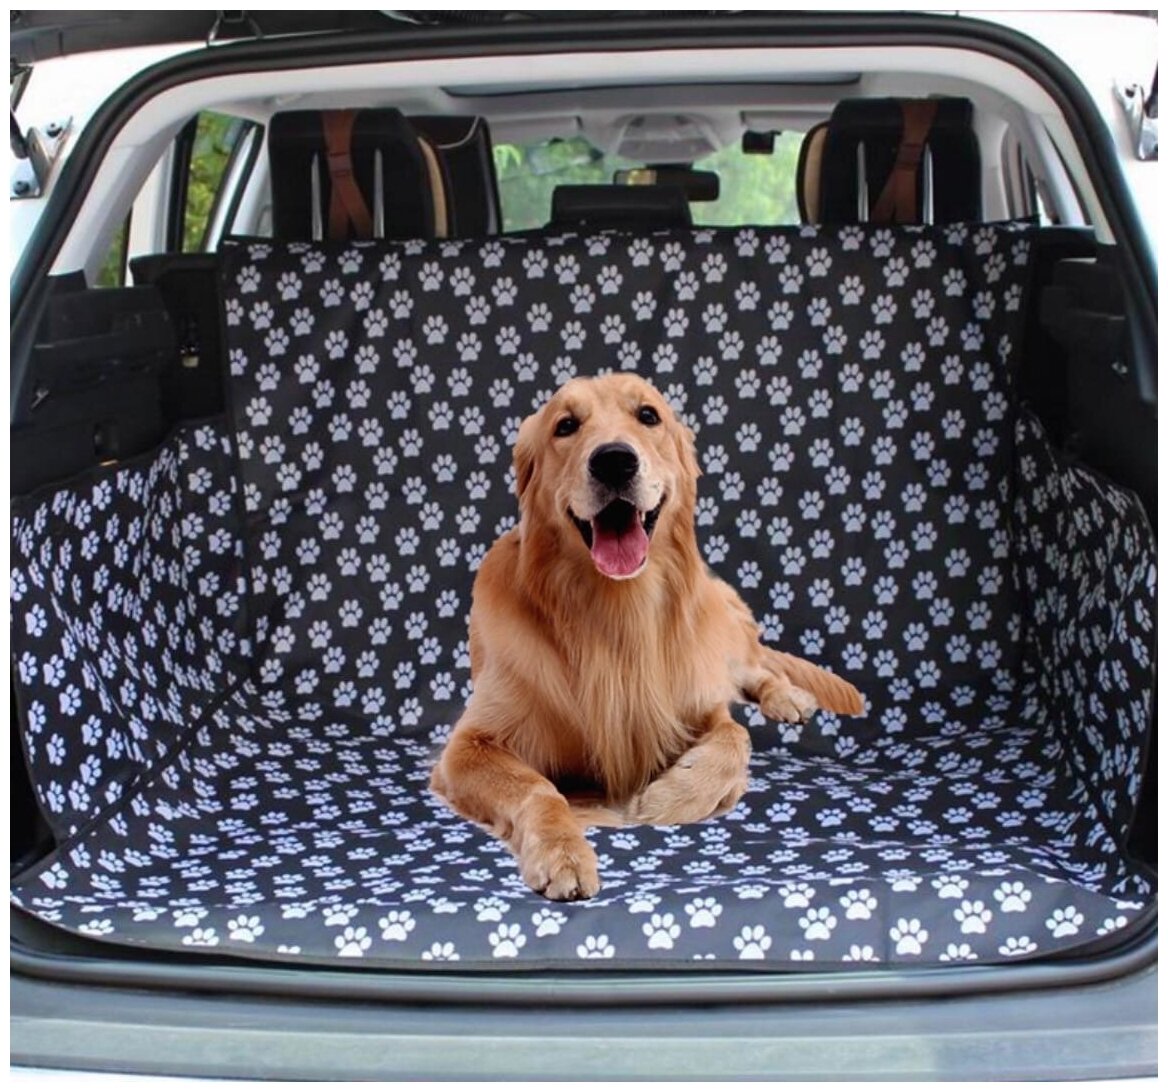 Коврик в багажник автомобиля, автогамак для собак, защитный чехол багажника авто для перевозки собак